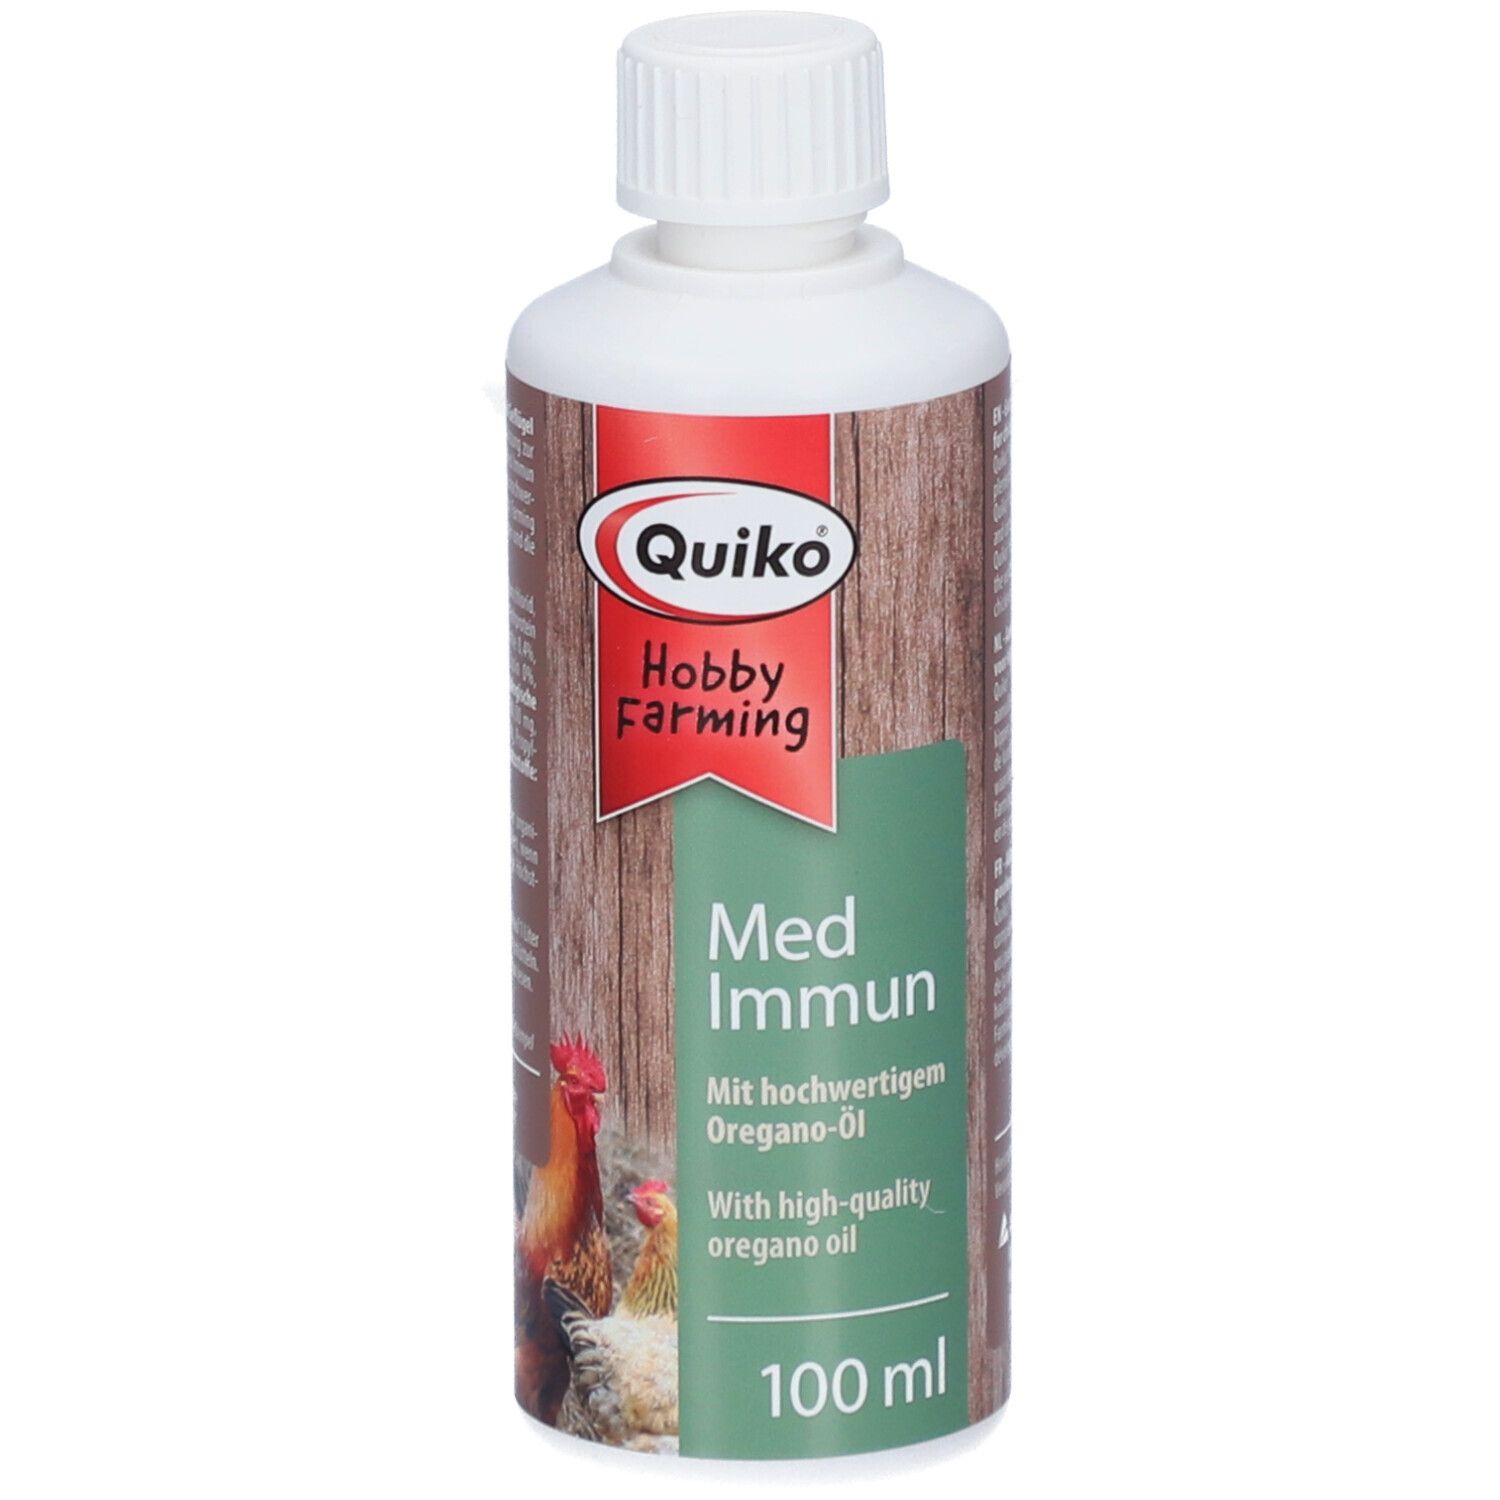 Quiko® Hobby Farming Med: Immun